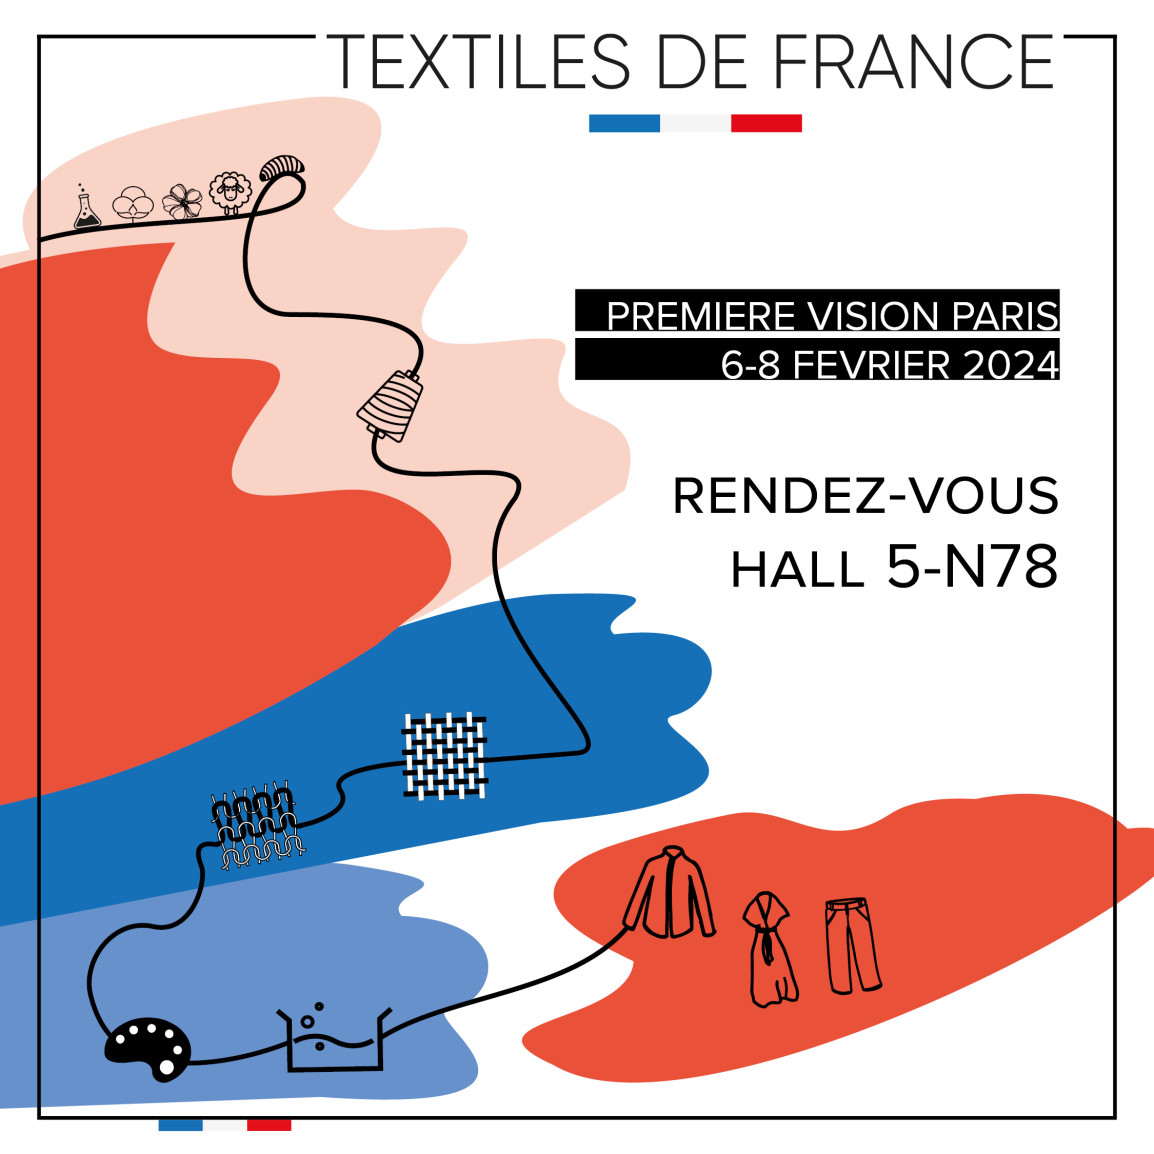 Les industriels du textile français vous donnent rendez-vous au Salon Première Vision du 6 au 8 février 2024